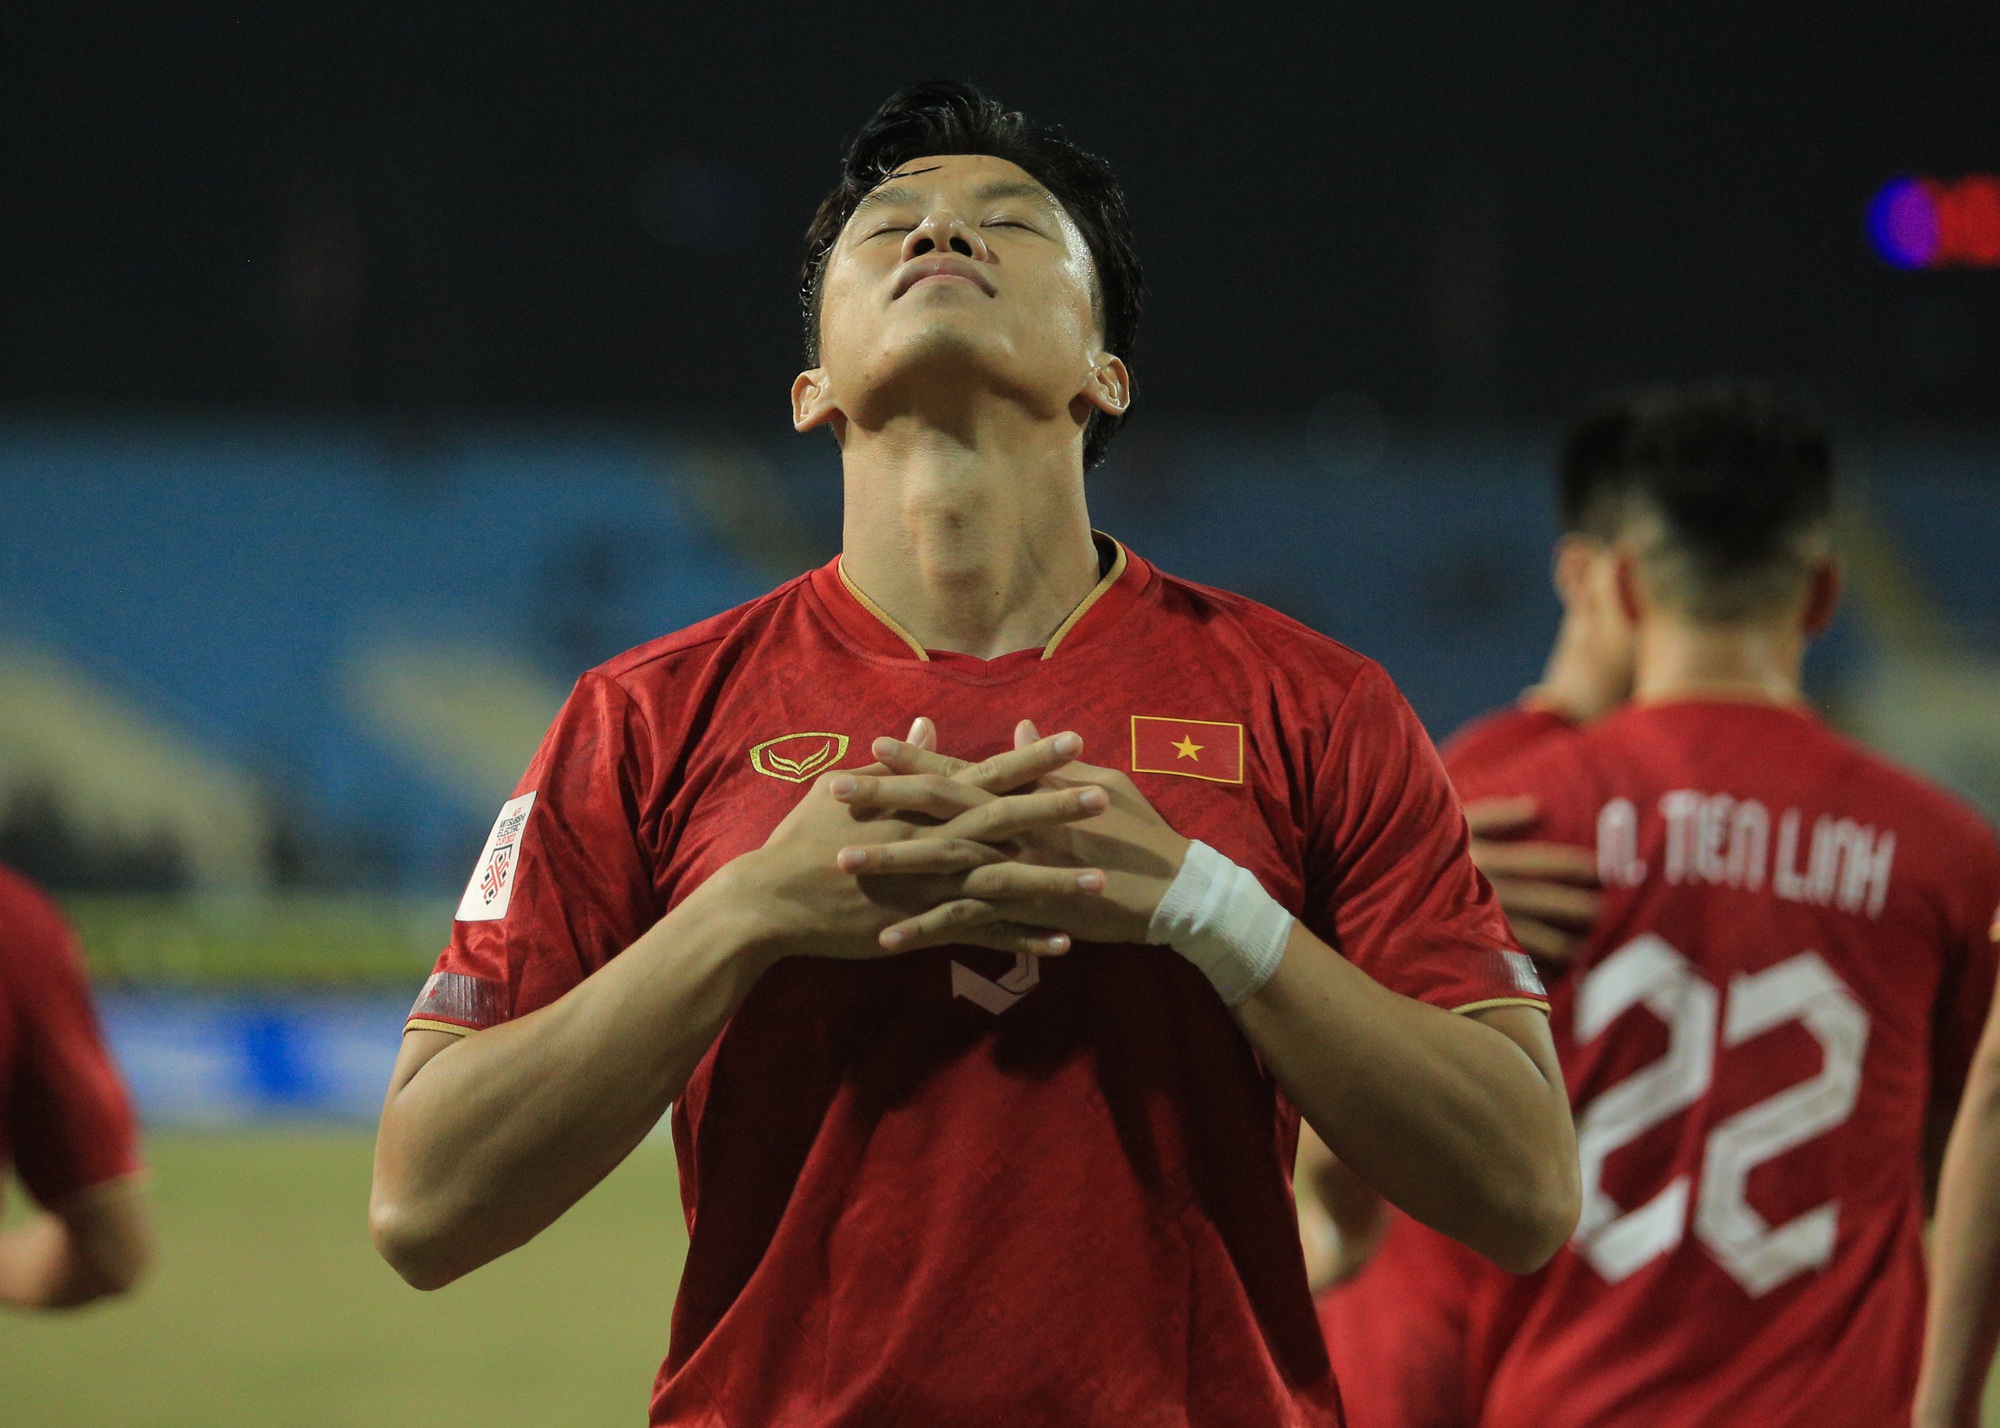 Quế Ngọc Hải ăn mừng theo phong cách của Ronaldo khi ghi bàn cho tuyển Việt Nam - Ảnh 2.